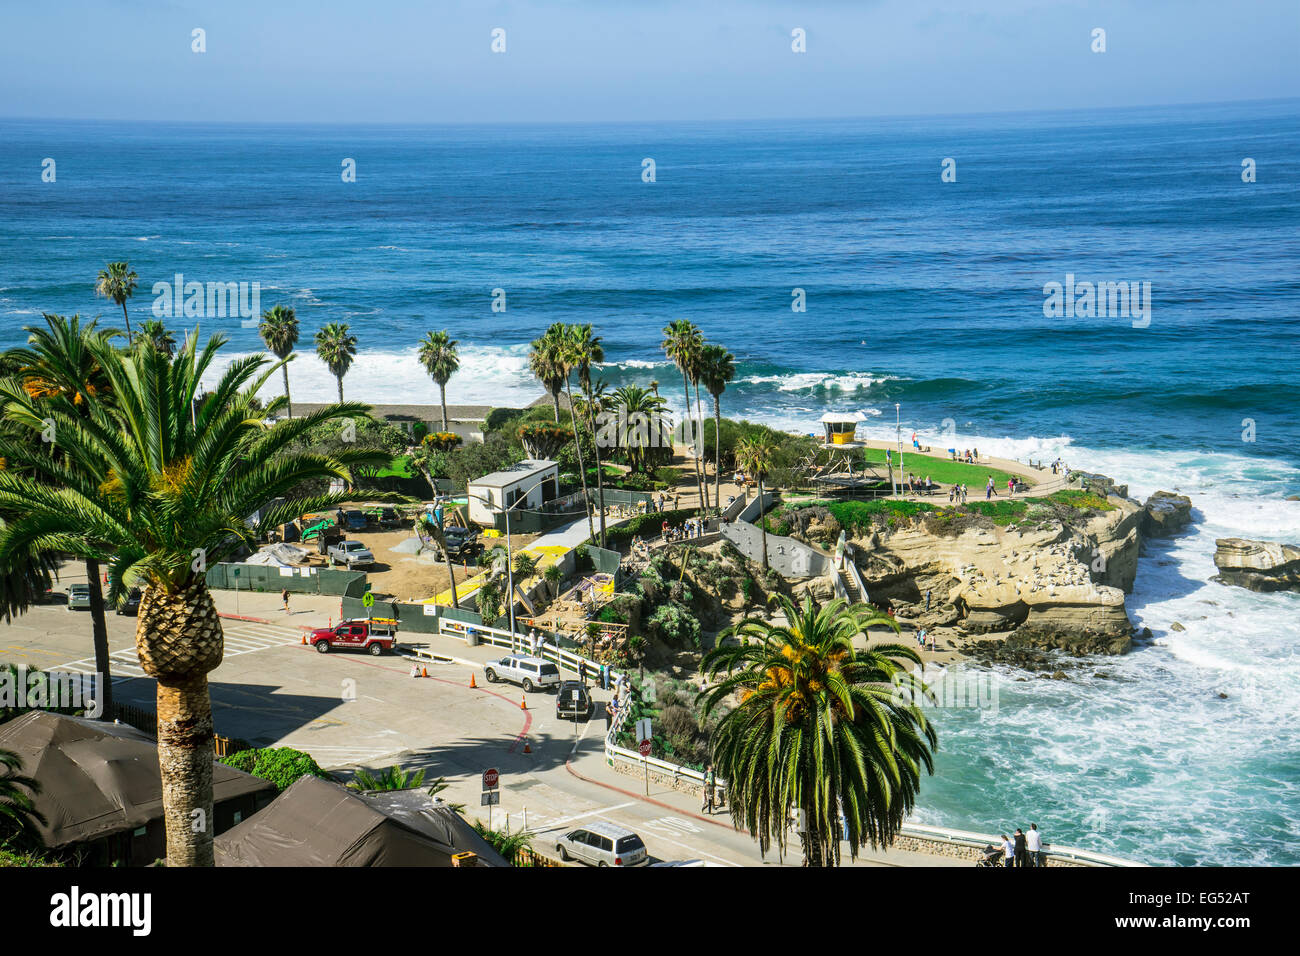 La spiaggia dei bambini a La Jolla California con oceano, palme e turisti Foto Stock